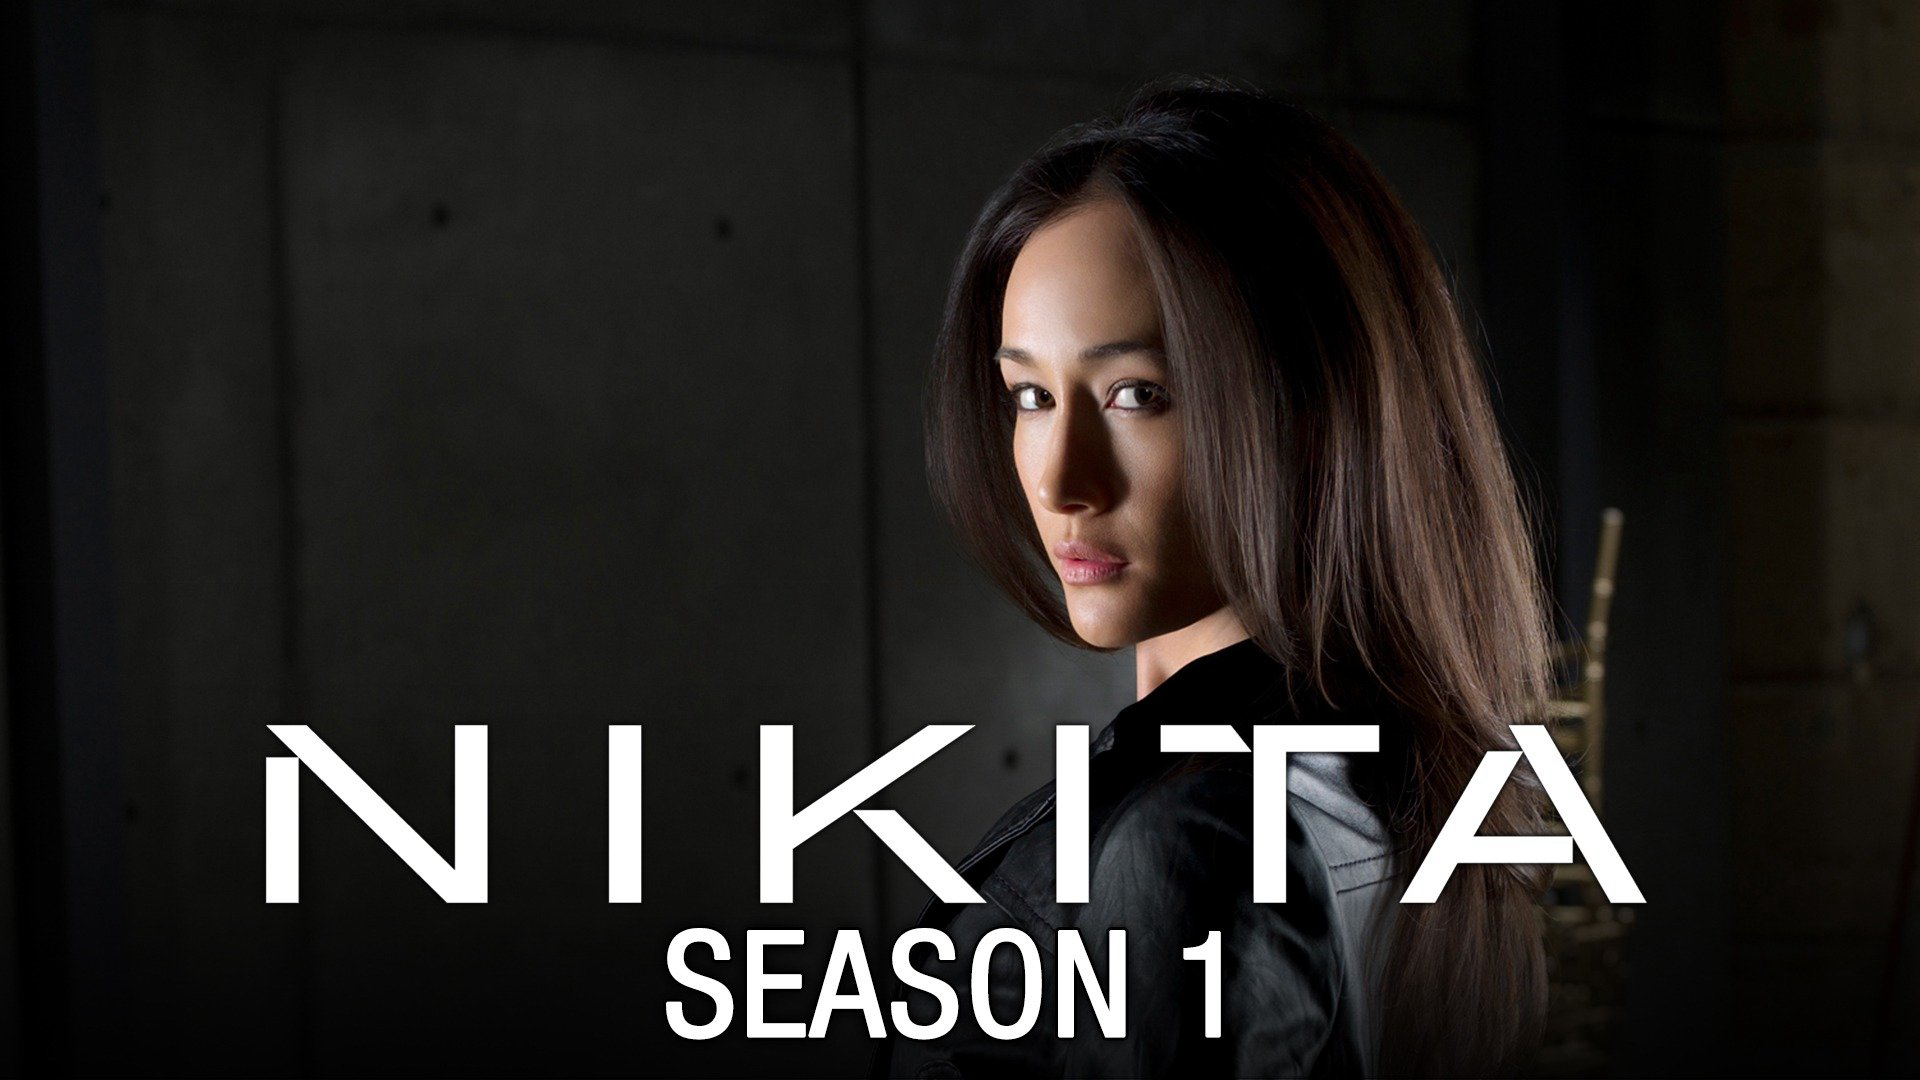 Nikita (Season 1) / Nikita (Season 1) (2010)